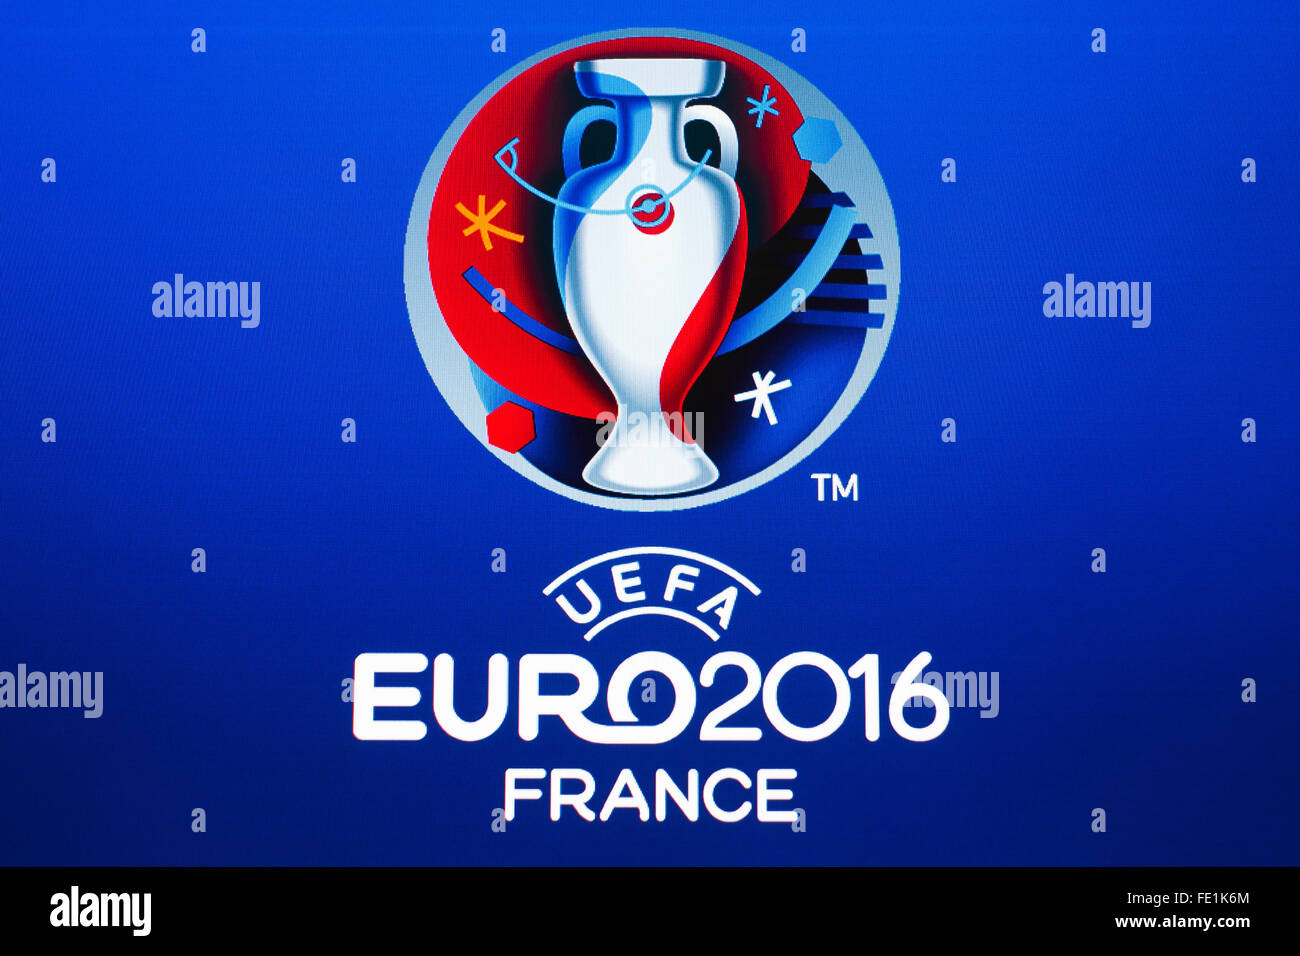 GDANSK, POLOGNE - Le 20 novembre 2015. Logo de l'UEFA 2016 Championnat d'Europe à la France sur l'écran de l'ordinateur Banque D'Images